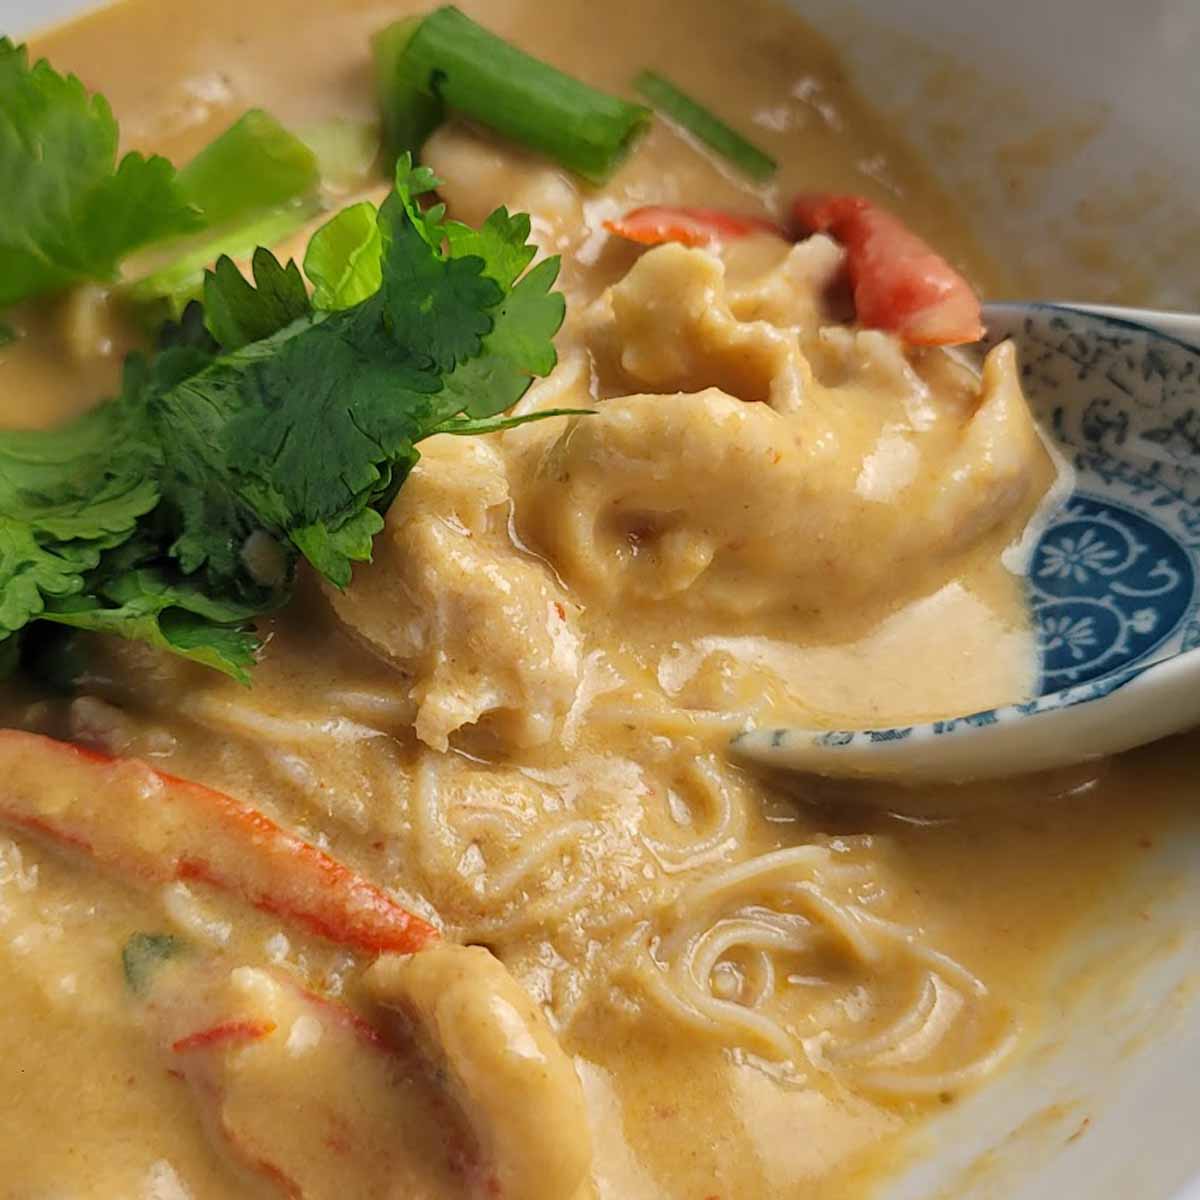 Receta fácil de fideos y sopa de pollo tailandesa de mamá